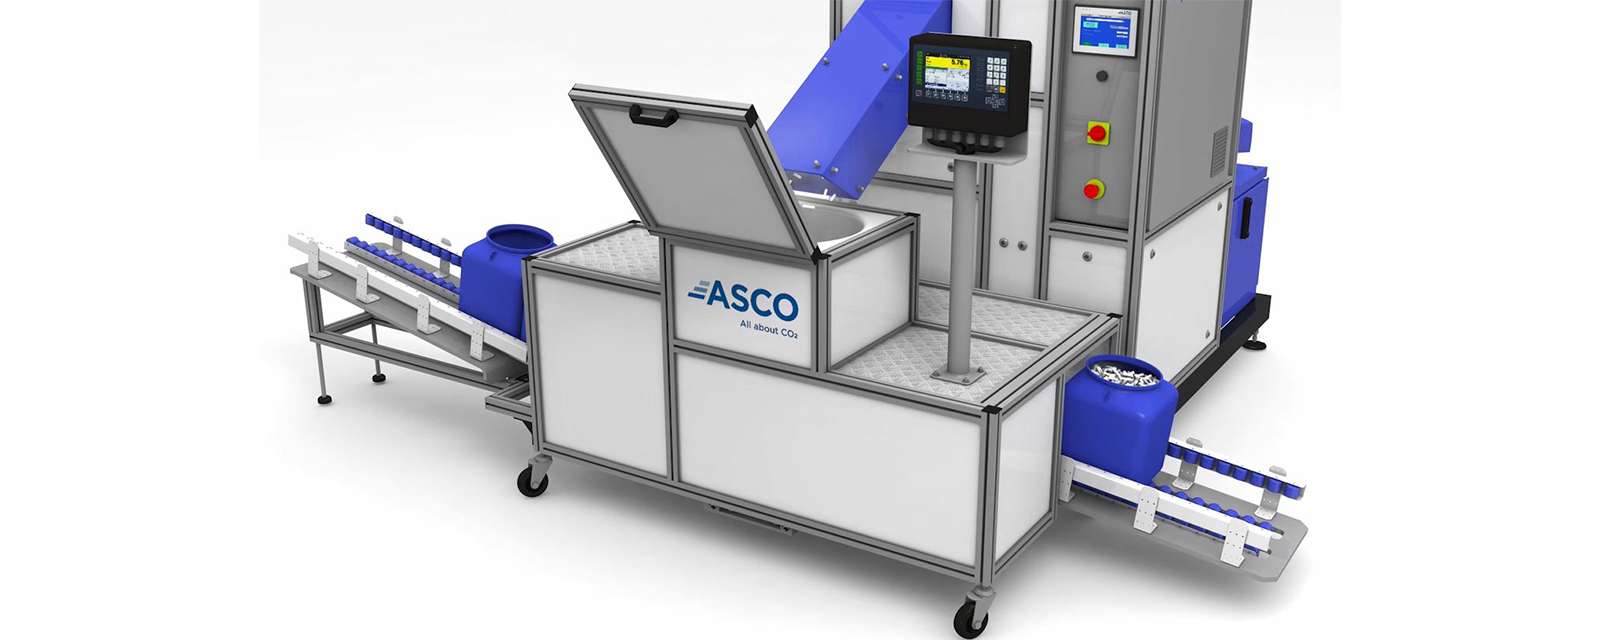 asco-bucket-filling-system-for-dry-ice-pellets-asco-co2-vietnam-he-thong-lam-day-da-kho-tu-dong-asco-co2-vietnam-ascoco2-vietnam-dai-ly-asco-co2.png